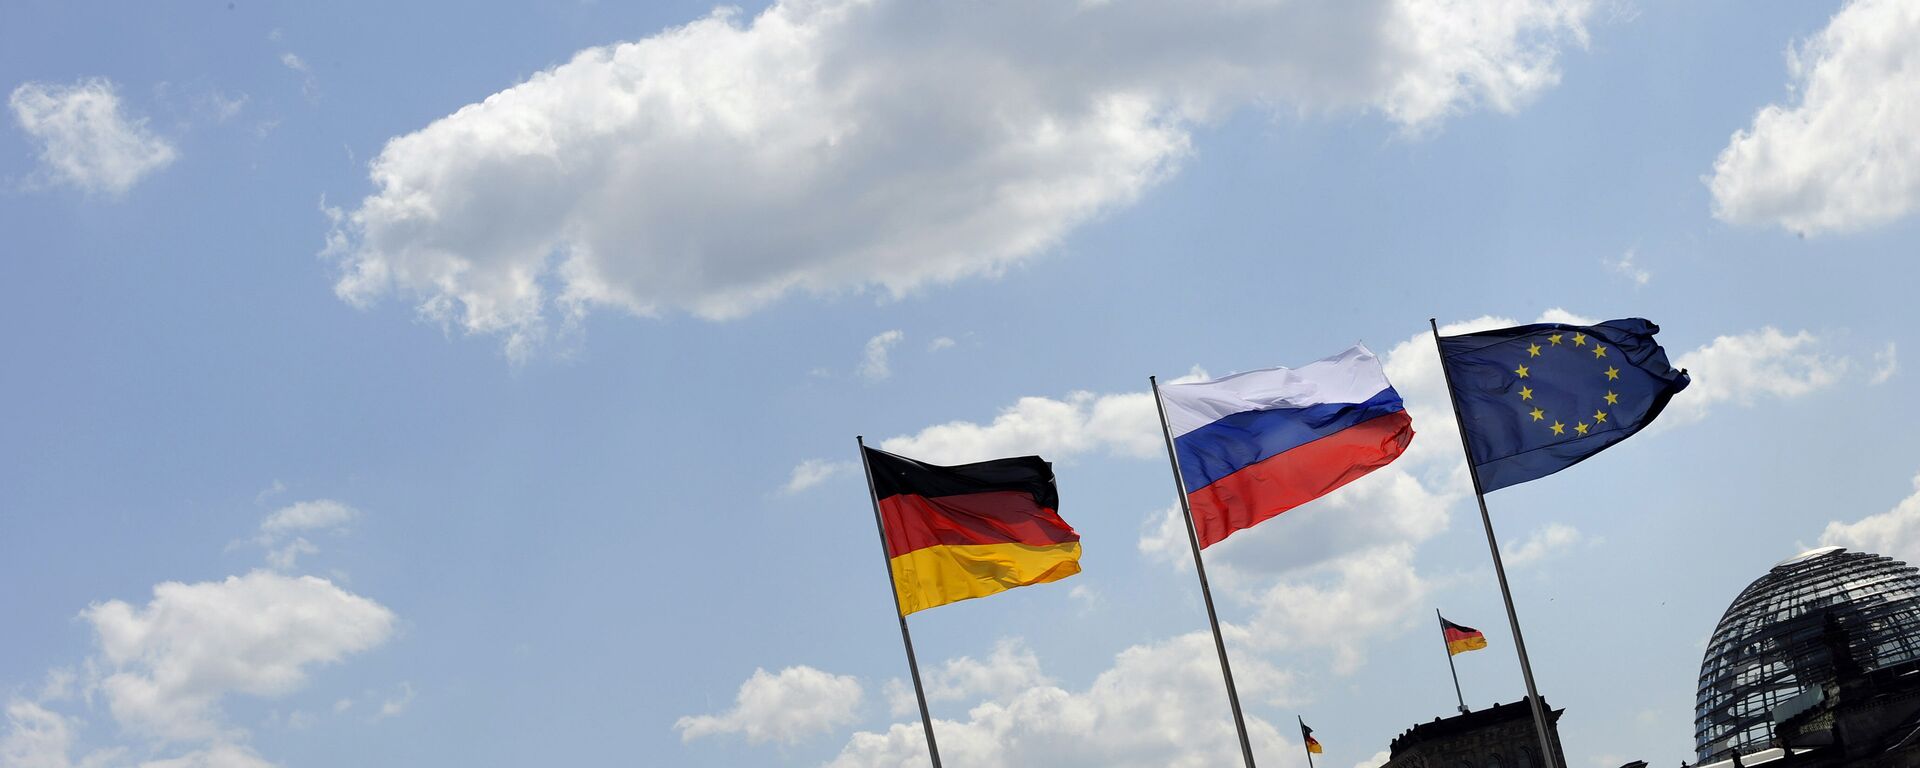 Флаги Германии, России и ЕС - Sputnik Узбекистан, 1920, 08.12.2020